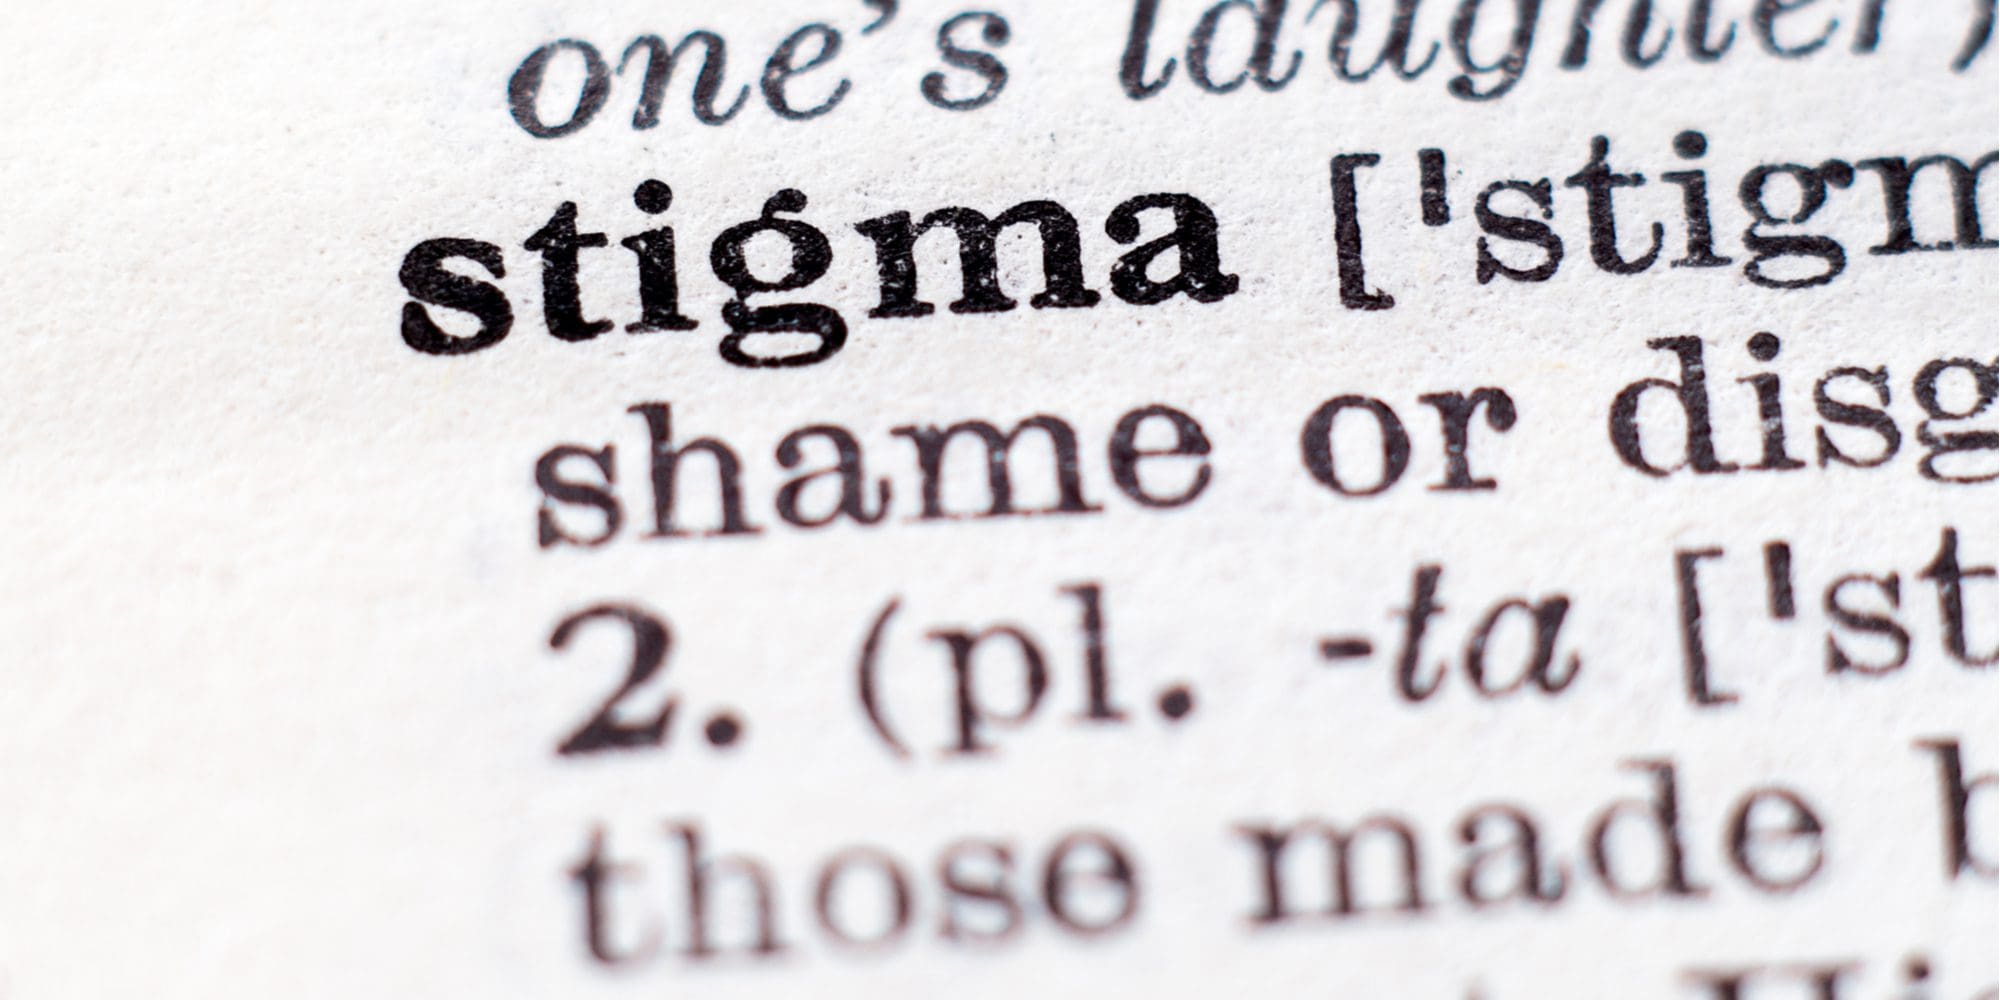 11mental illness stigma